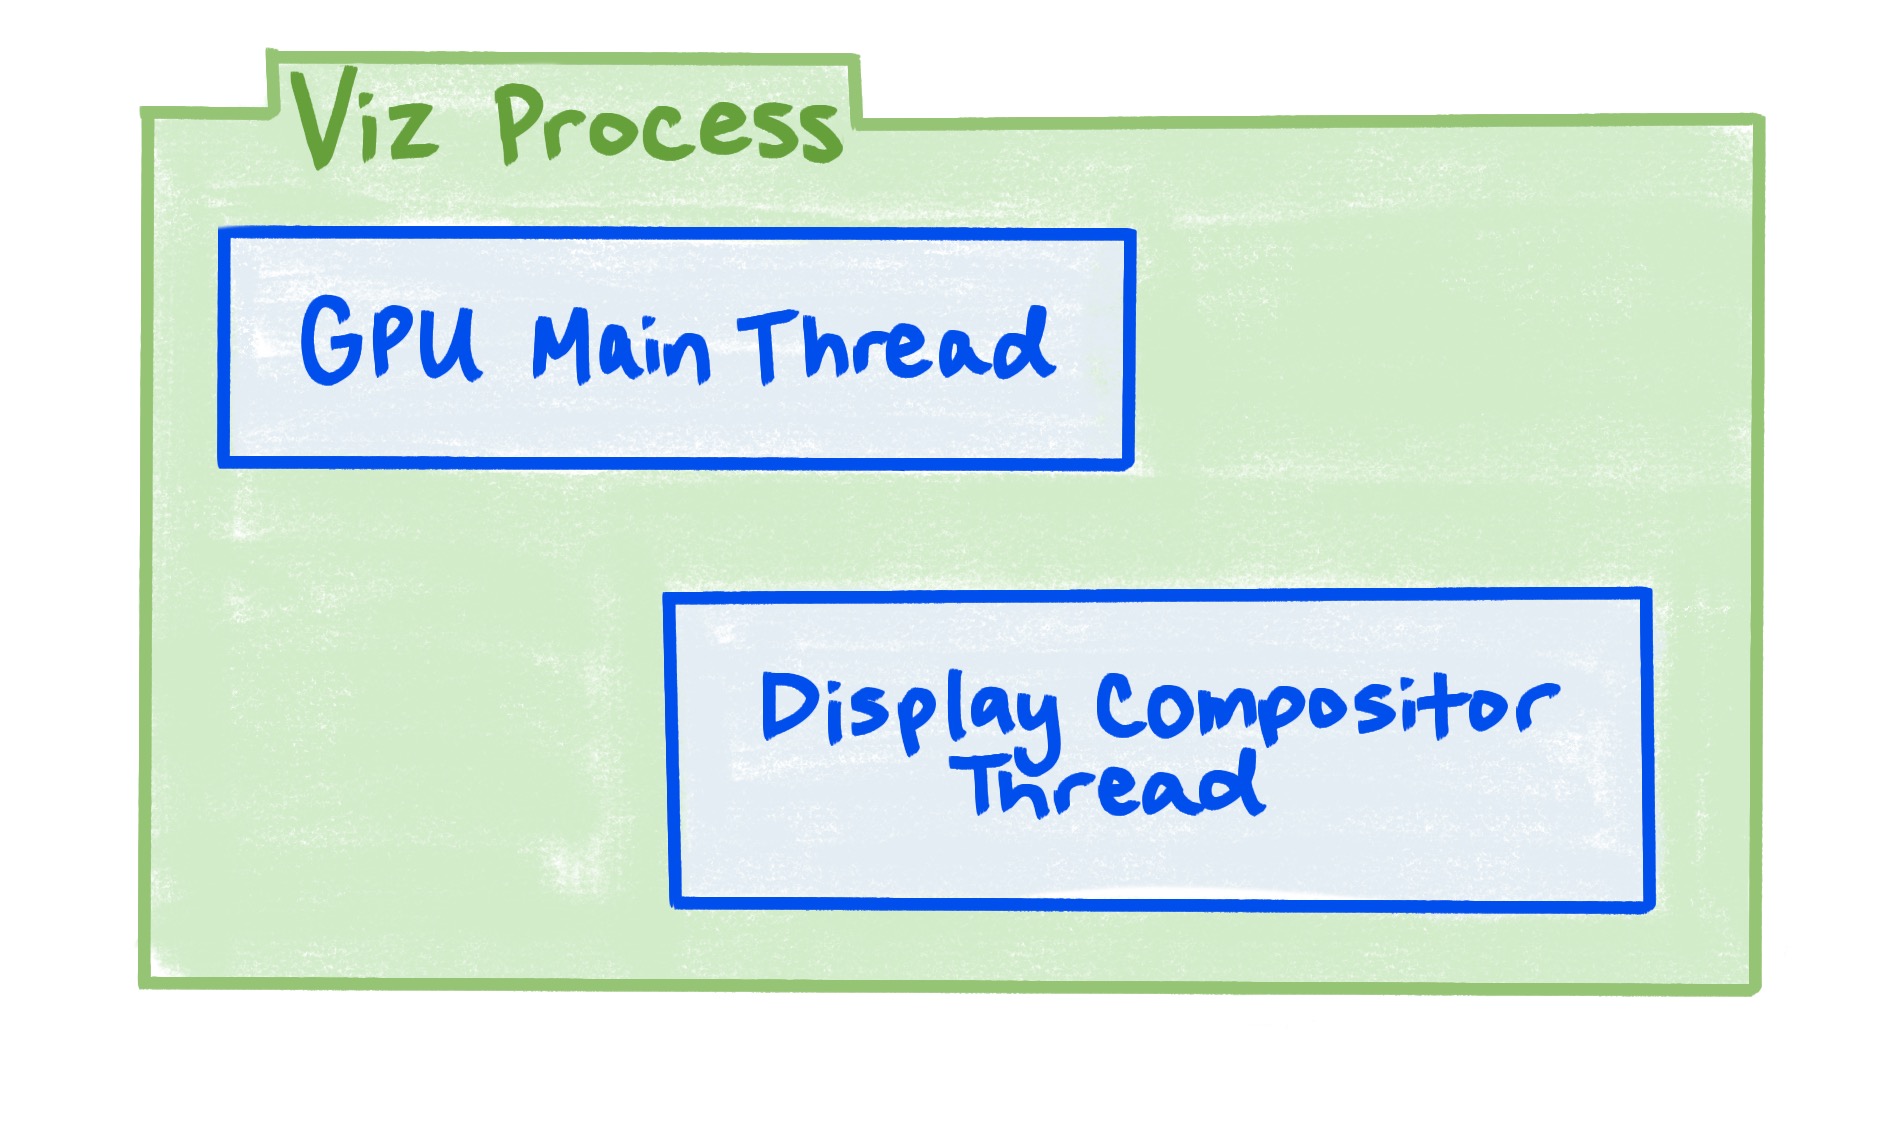 Proses Viz mencakup thread utama GPU, dan thread compositor tampilan.